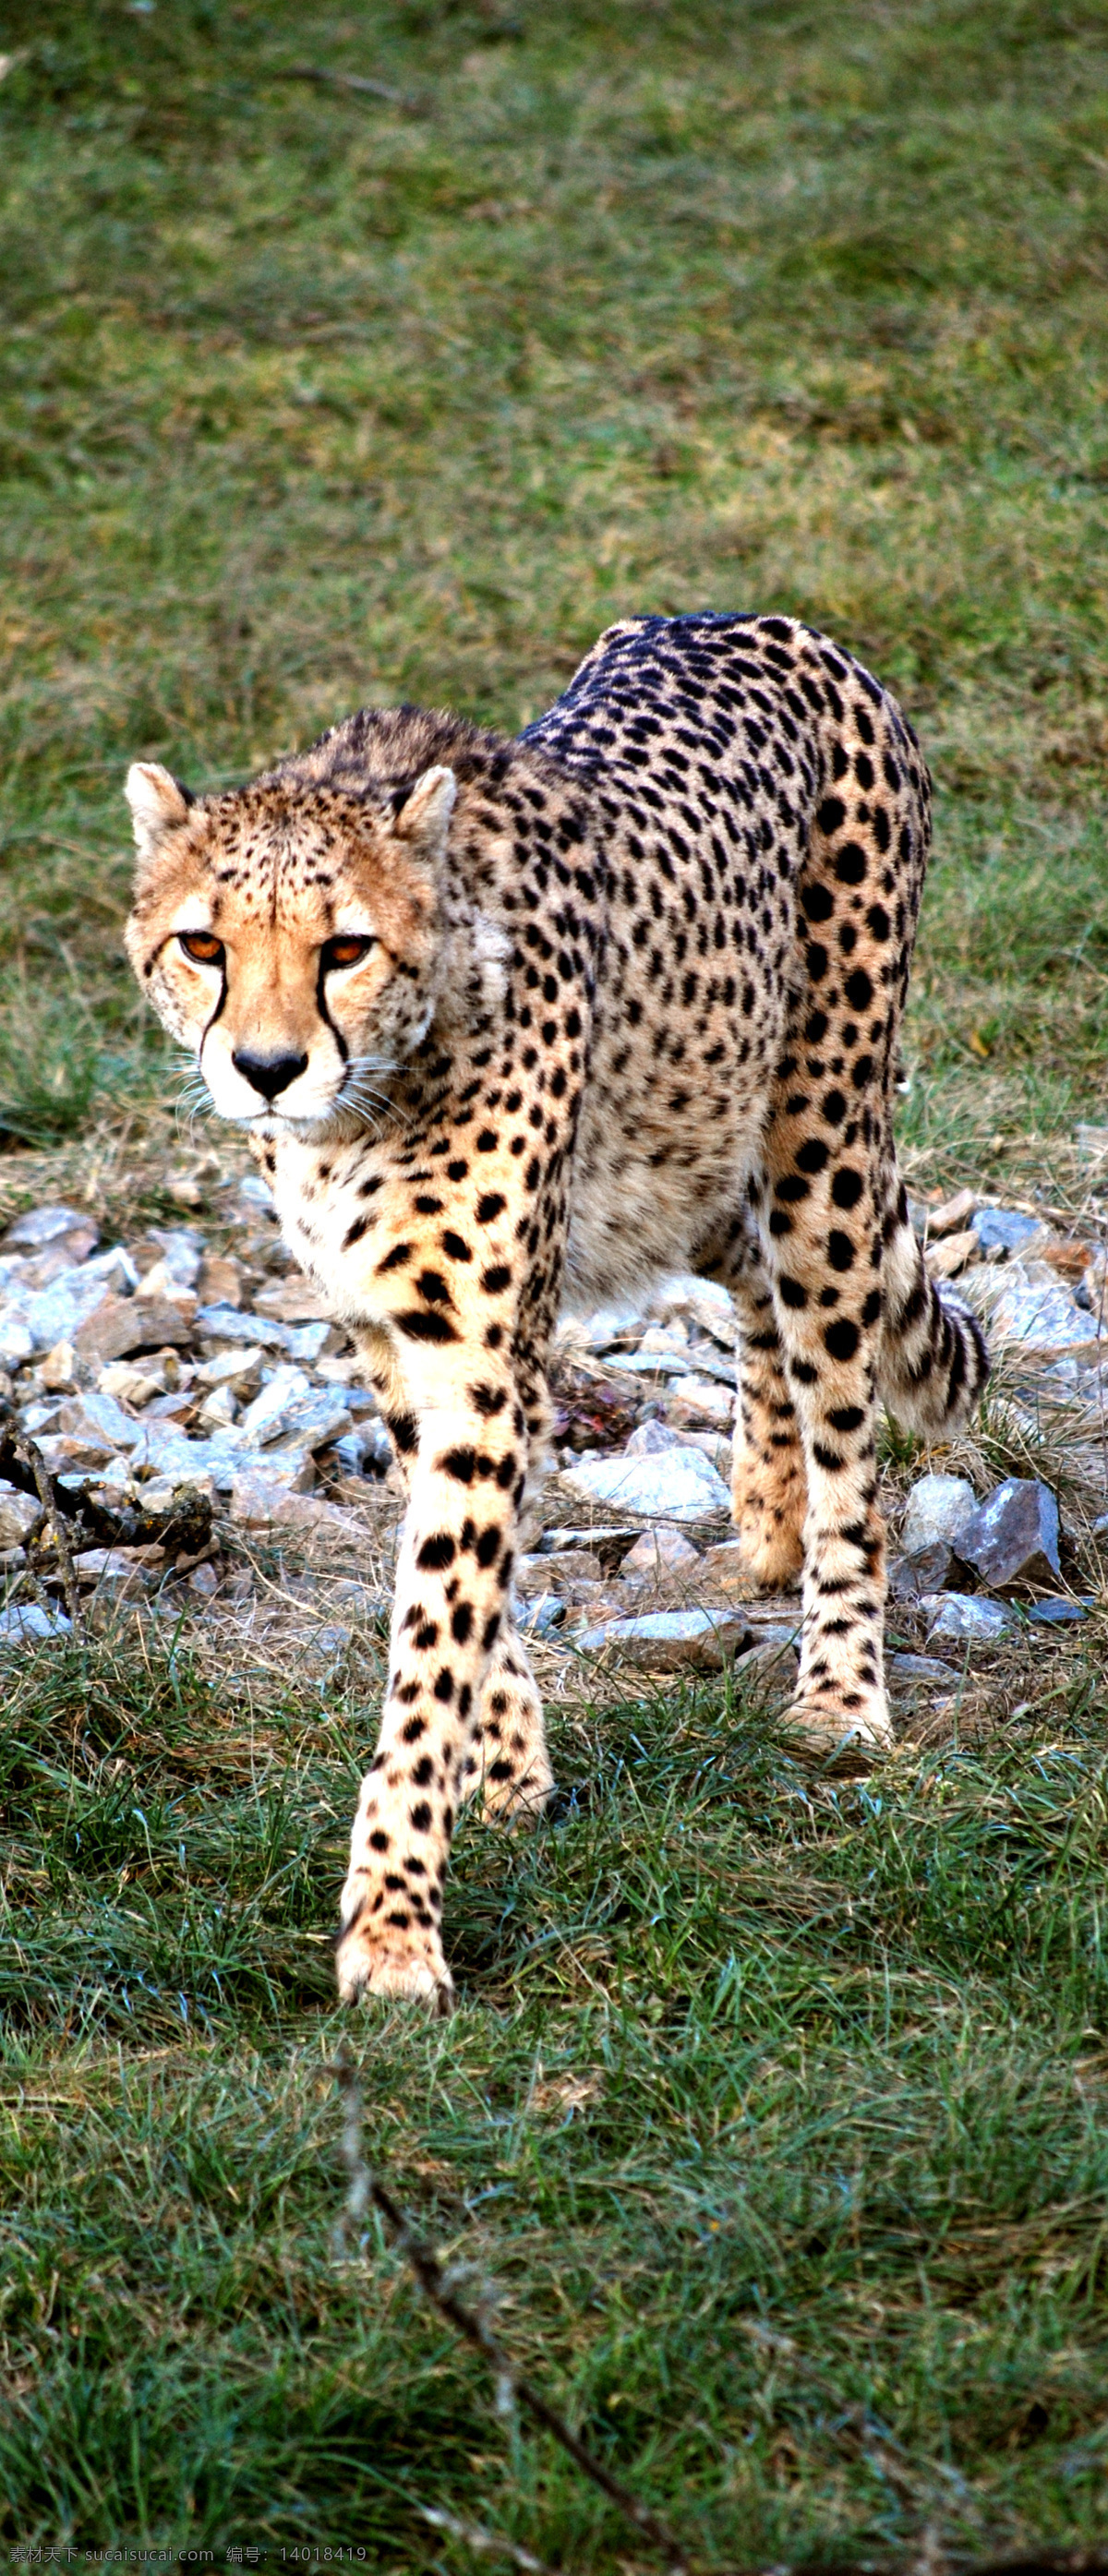 猎豹 动物摄影 动物图片 豹 豹子 金钱豹 豹子图片 食肉动物 野生动物 猫科动物 生物世界